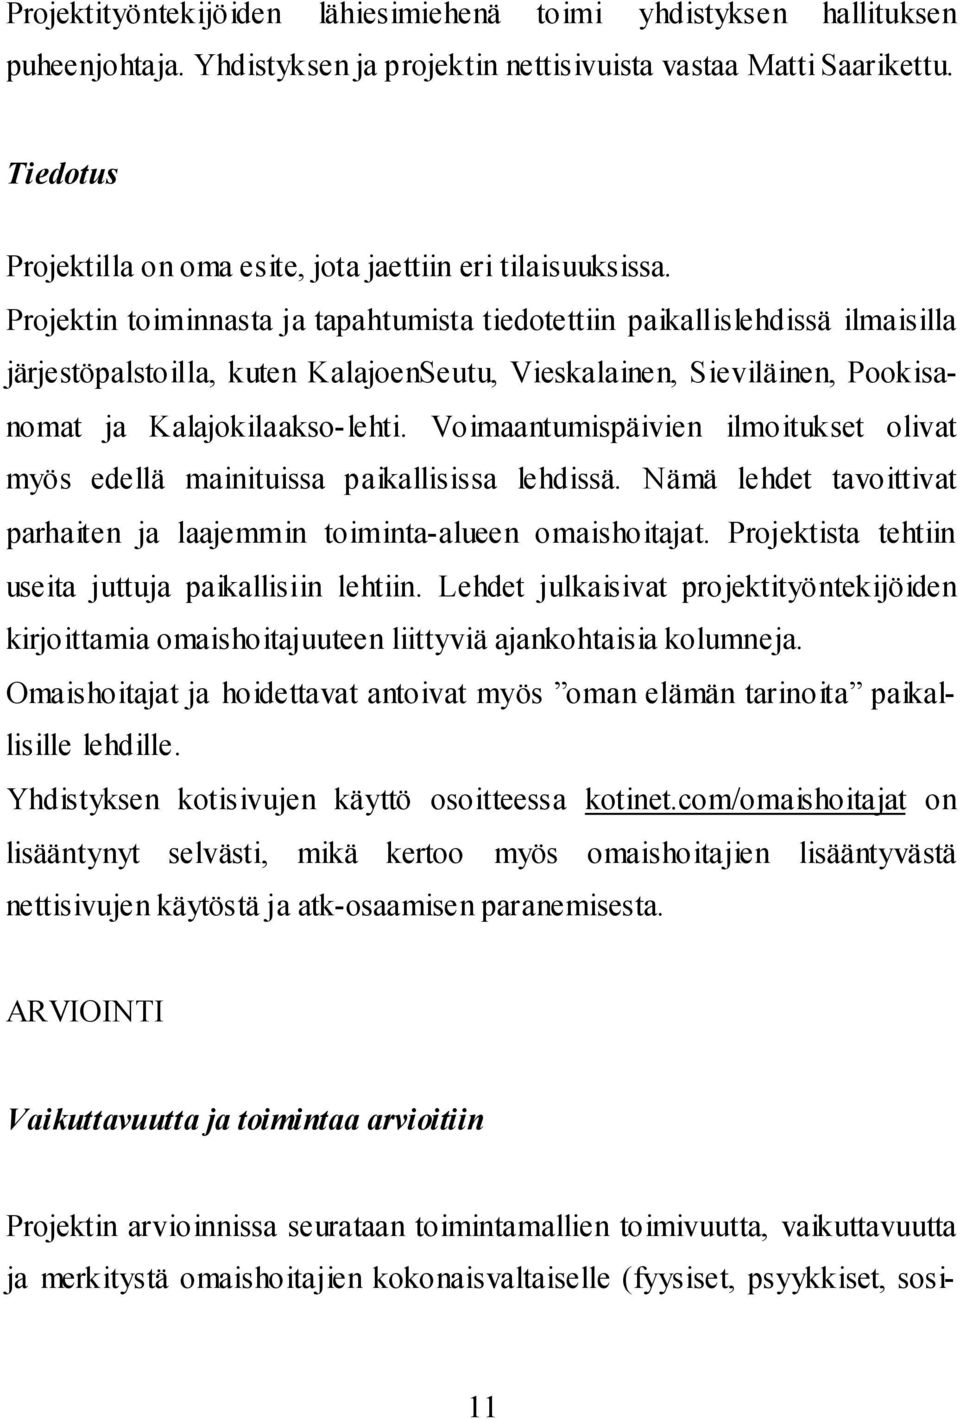 Projektin toiminnasta ja tapahtumista tiedotettiin paikallislehdissä ilmaisilla järjestöpalstoilla, kuten KalajoenSeutu, Vieskalainen, Sieviläinen, Pookisanomat ja Kalajokilaakso-lehti.